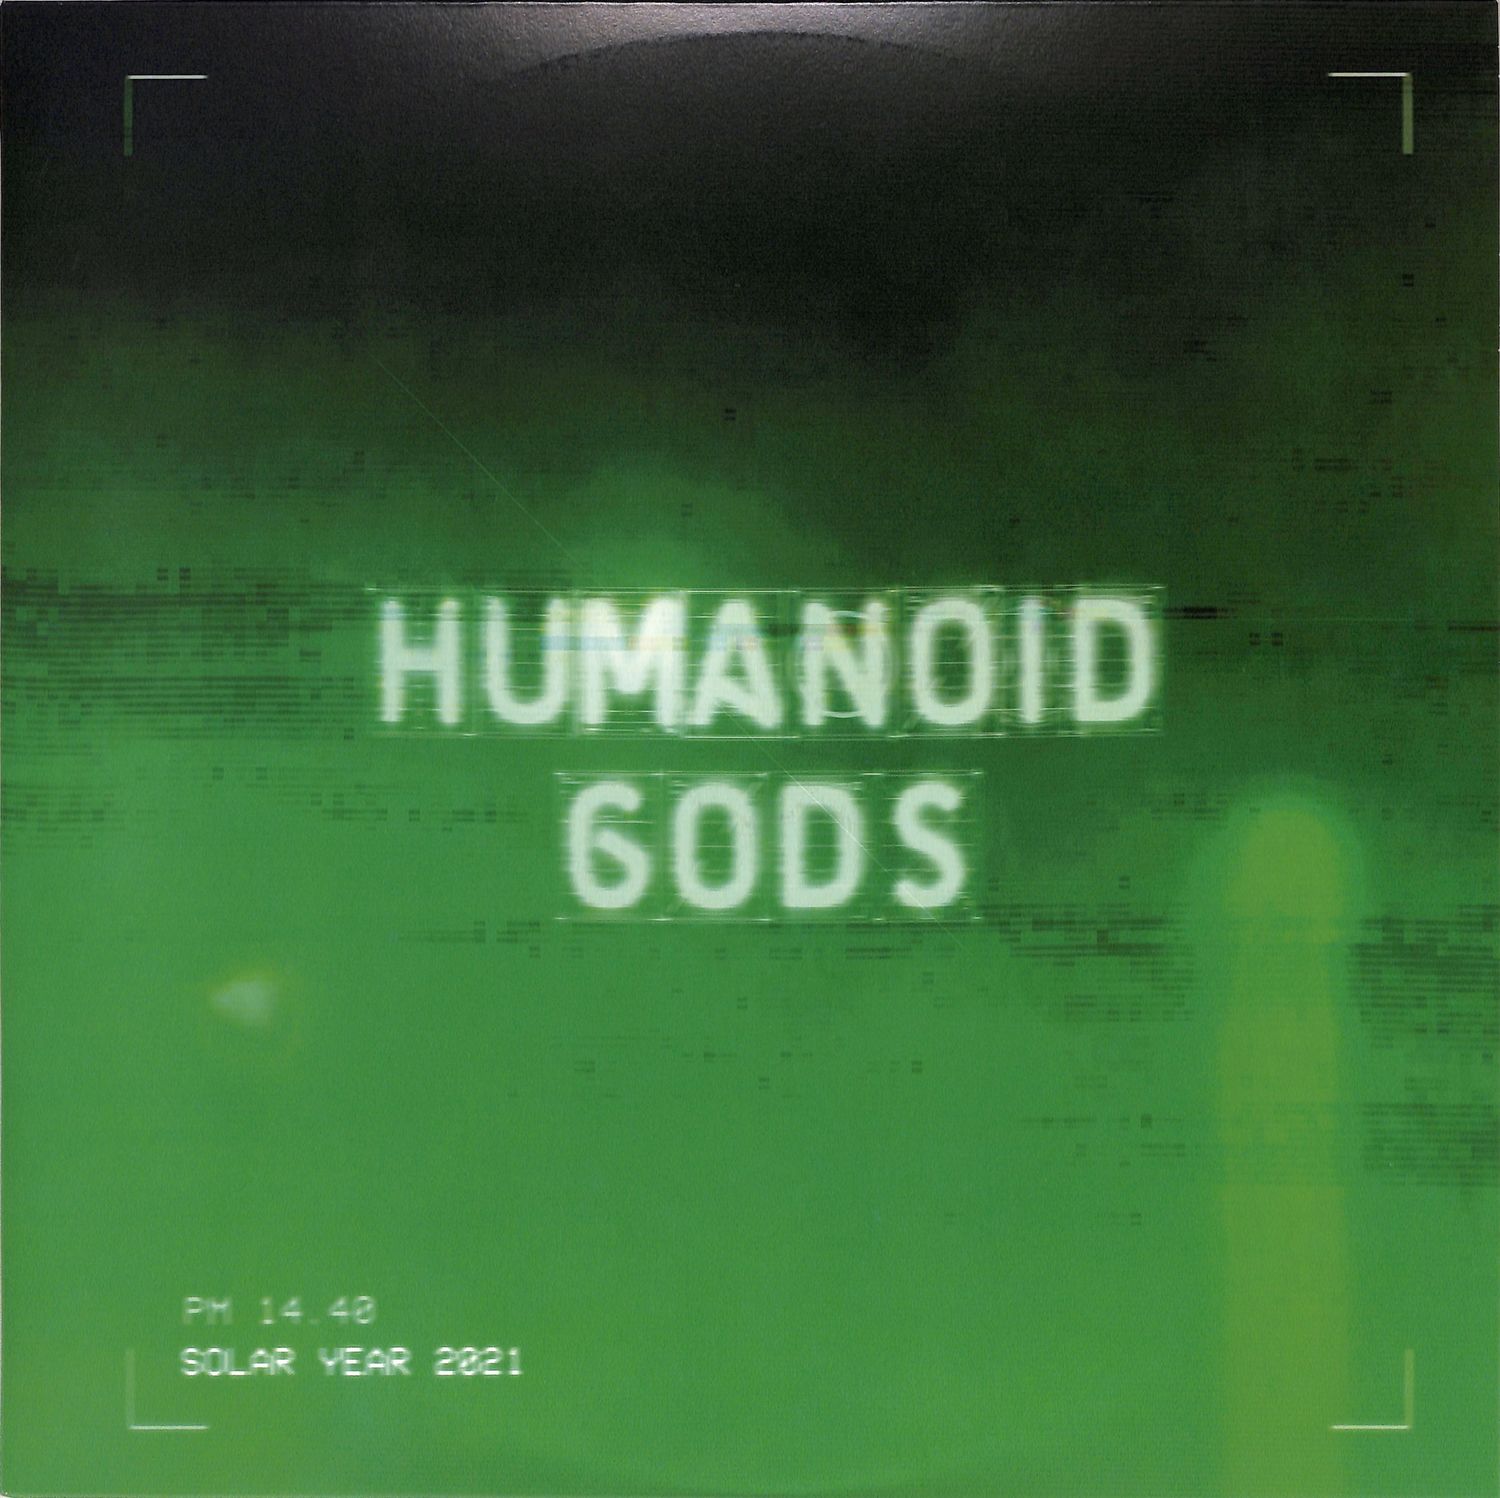 Humanoid Gods - HUMANOID GODS 2 EP